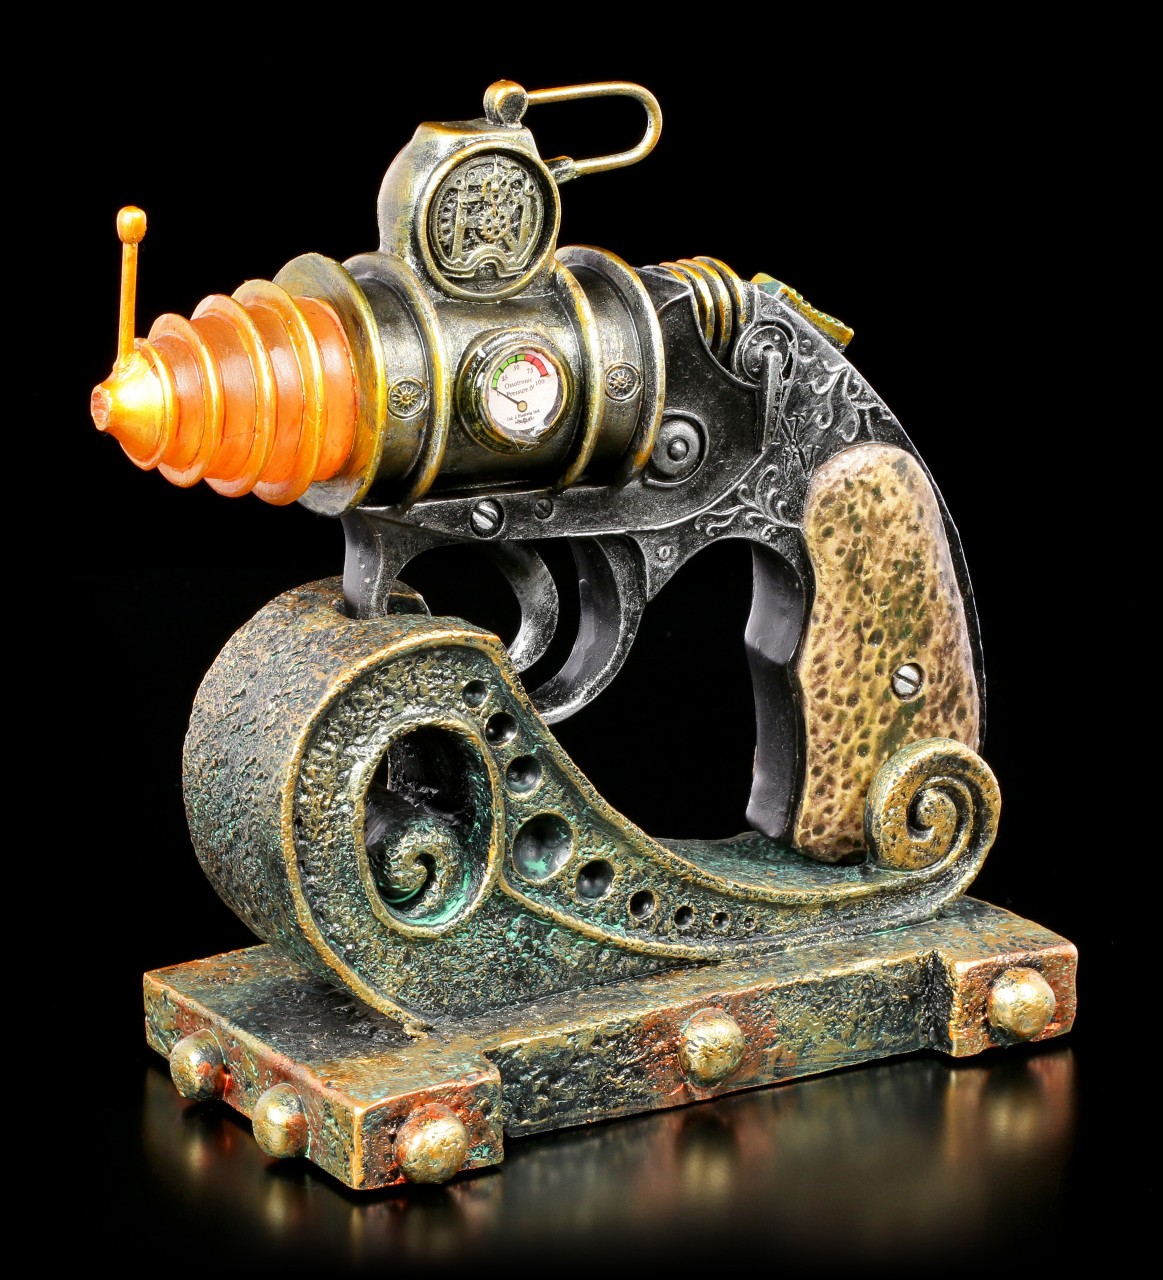 Steampunk Decoration Gun - The C.O.D